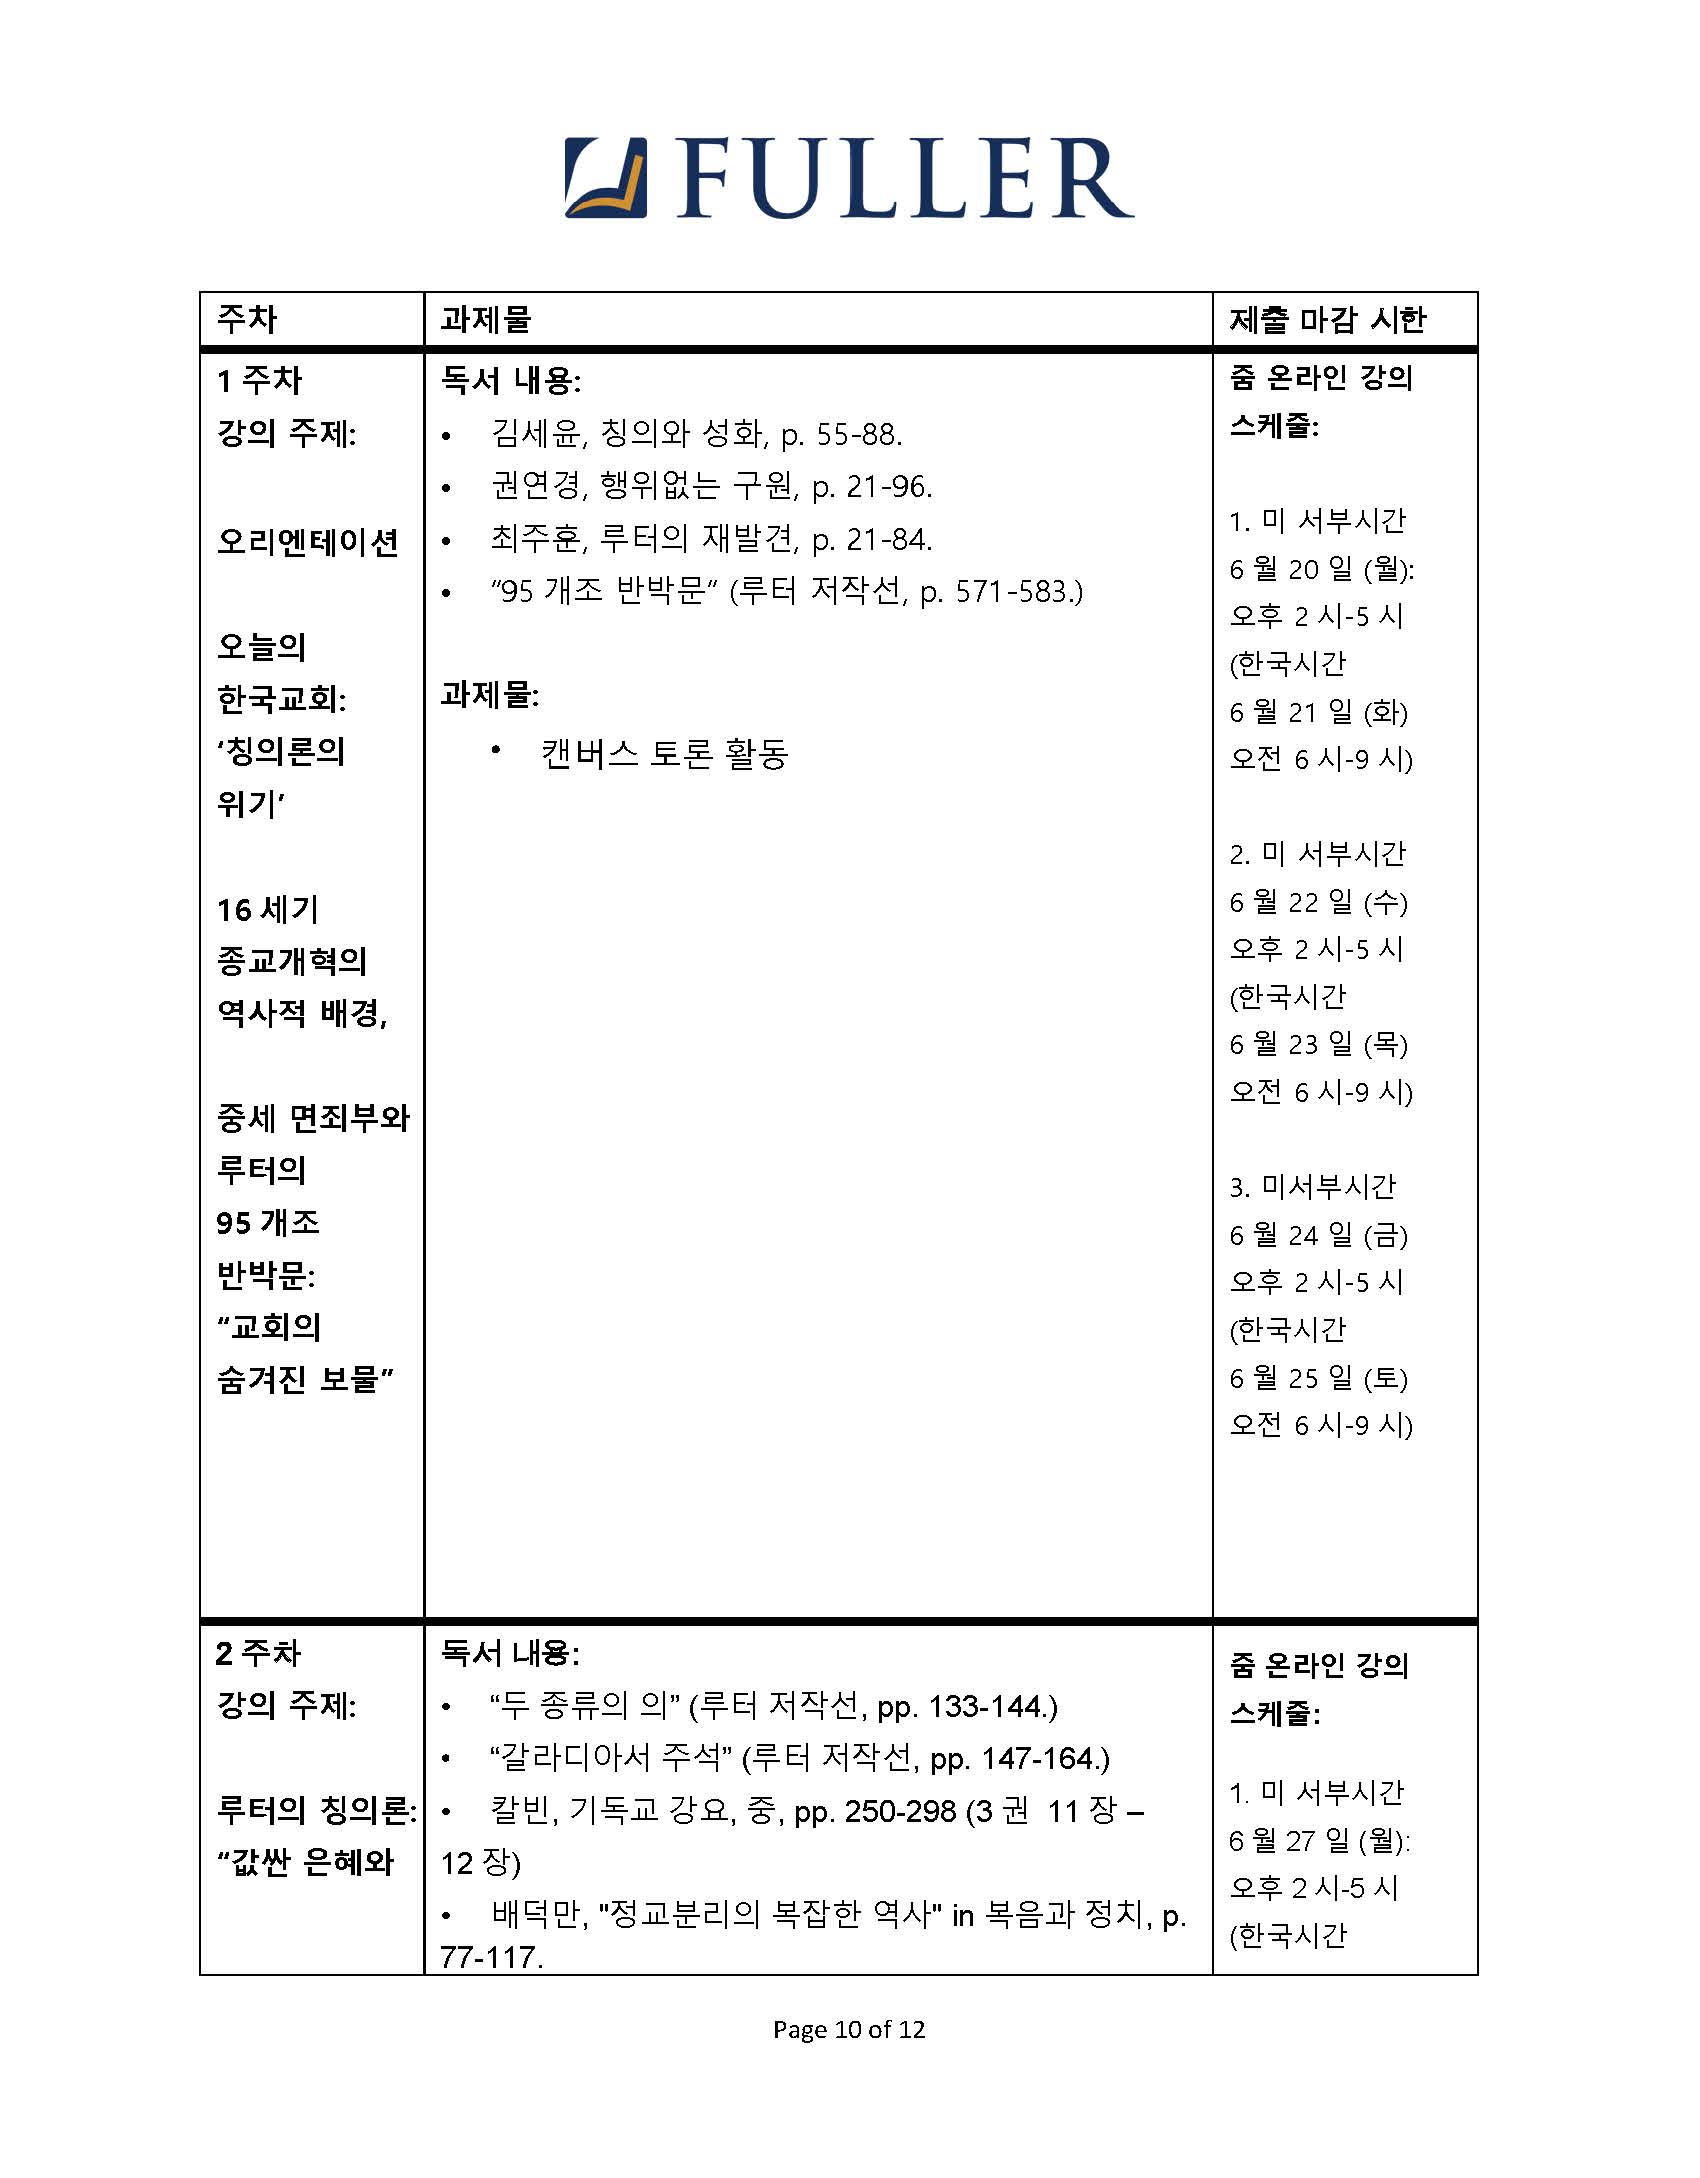 CH743 Syllabus (Korean) (1)_Page_10.jpg